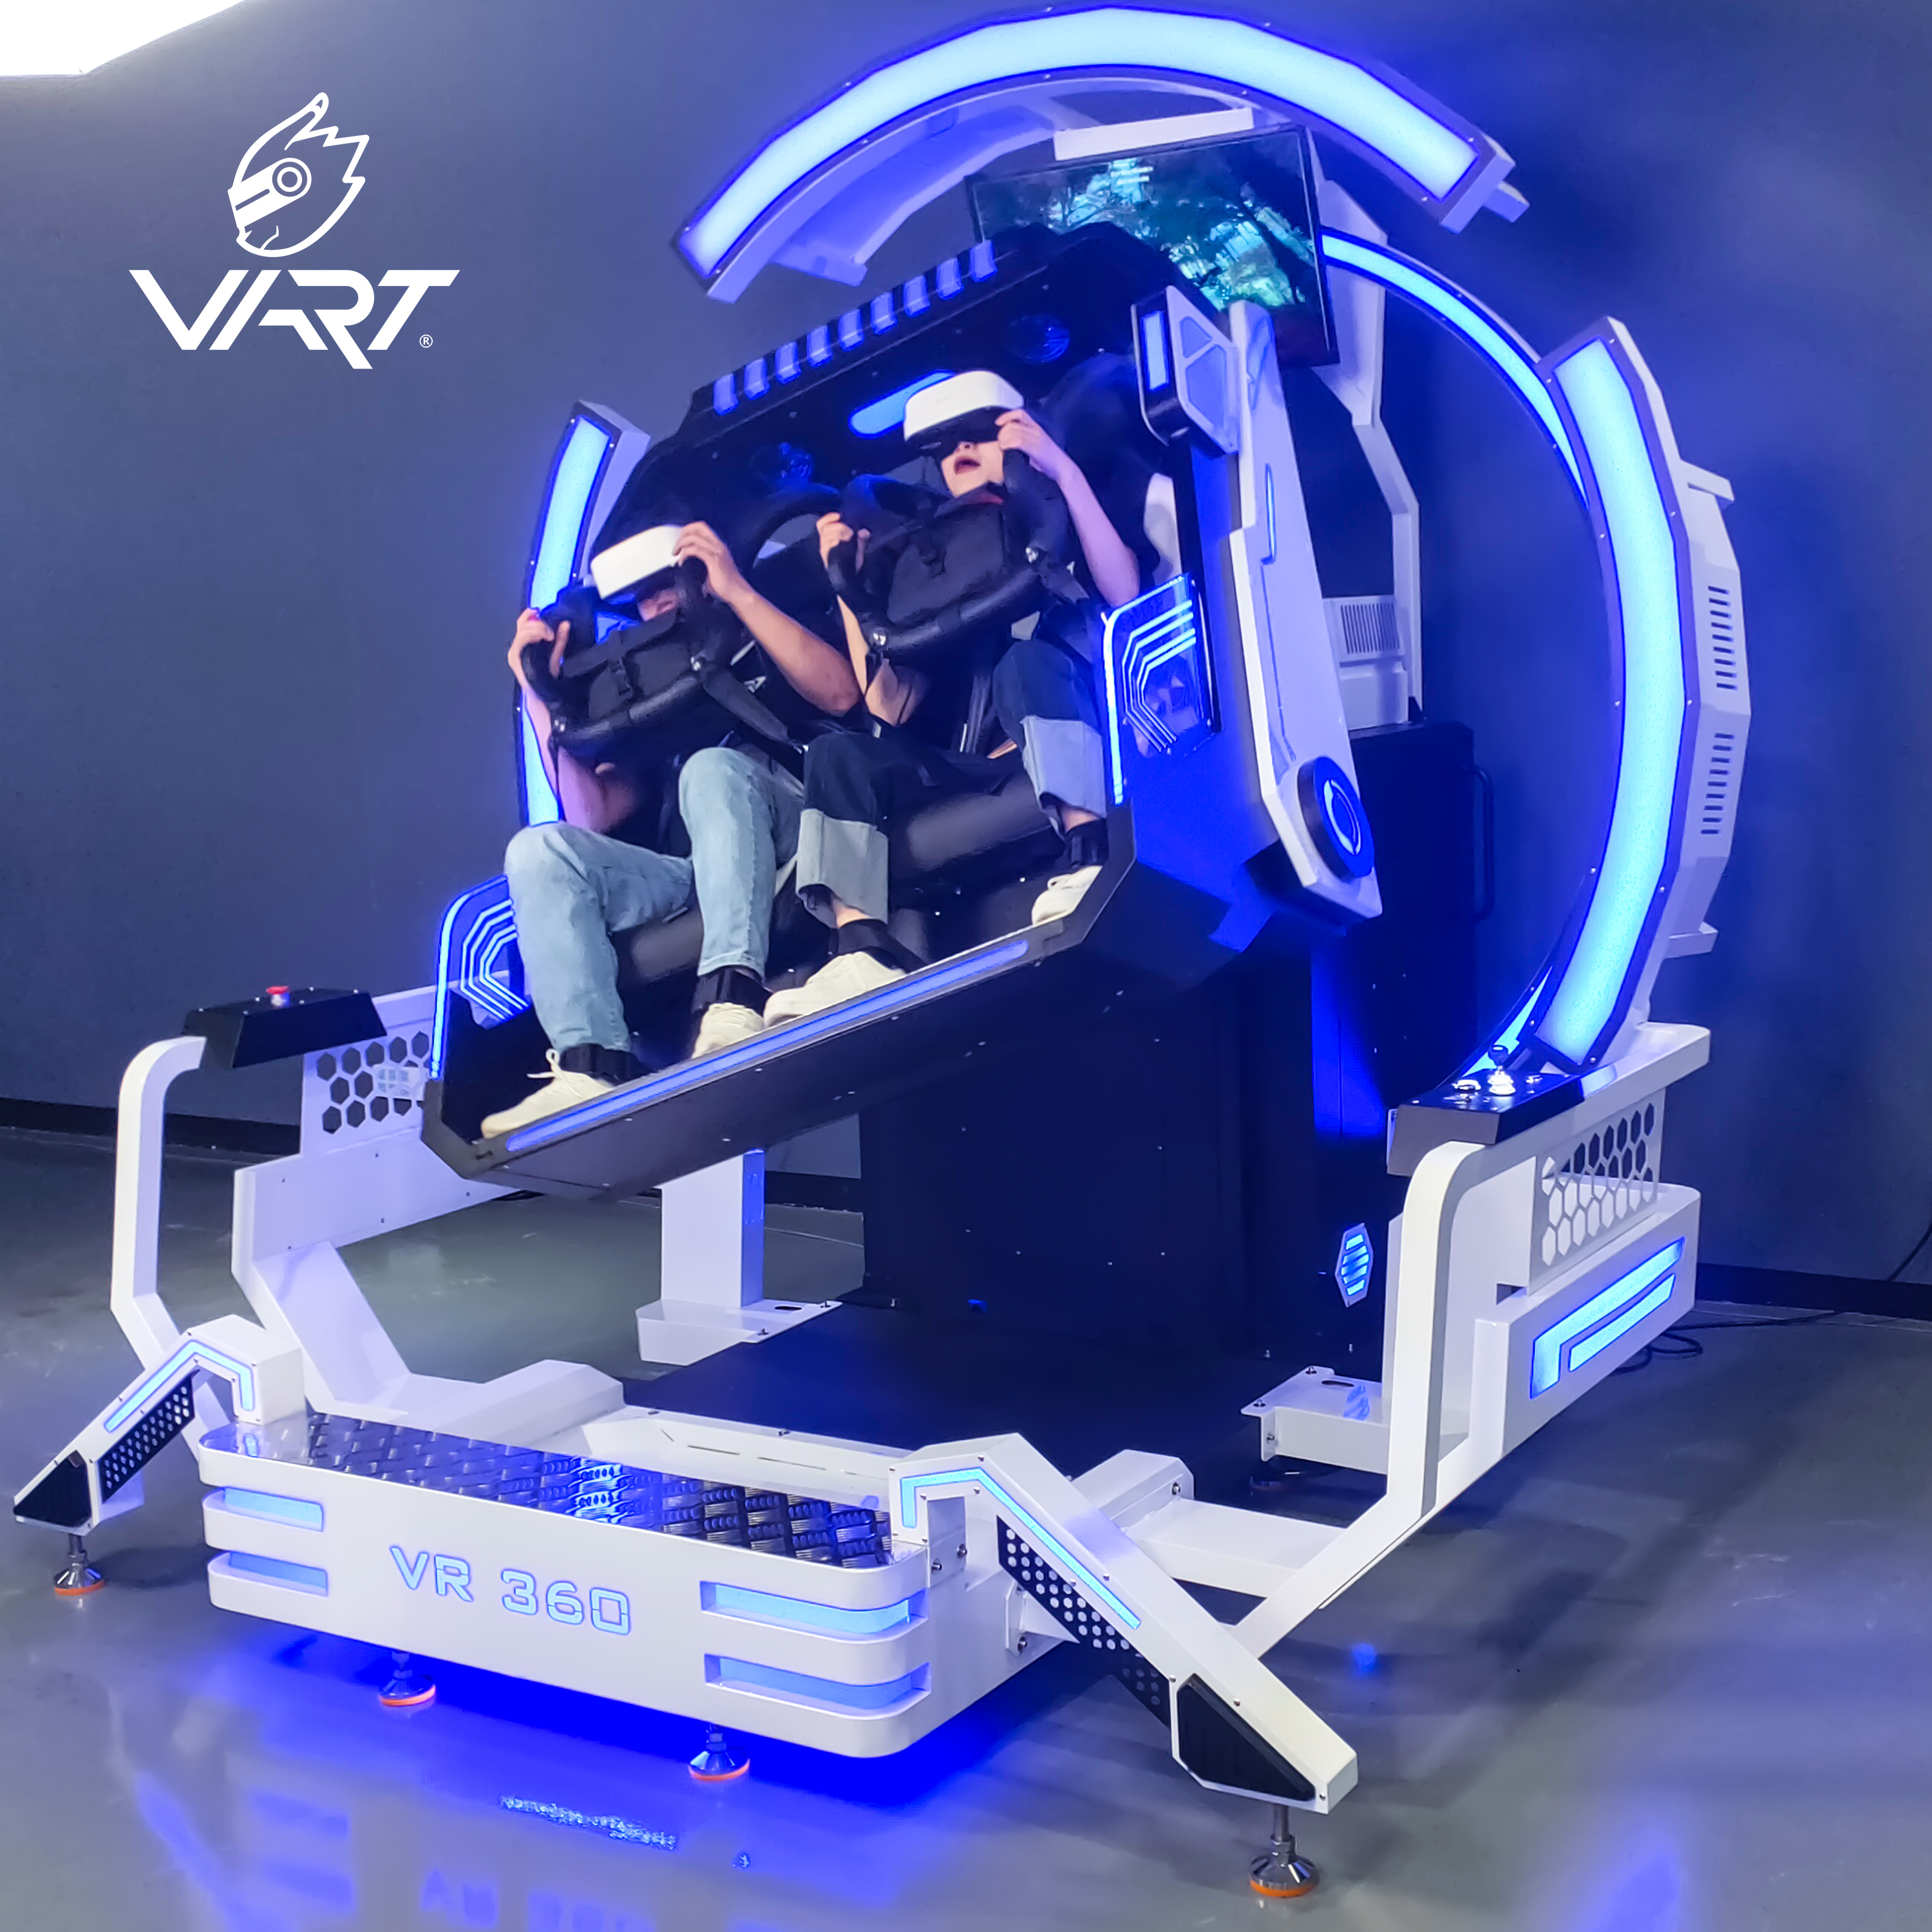 Harga Murah untuk 9d Vr 360 Derajat Headtracking Roller Coaster Simulator Plus Virtual Reality Getaran Bioskop 9d